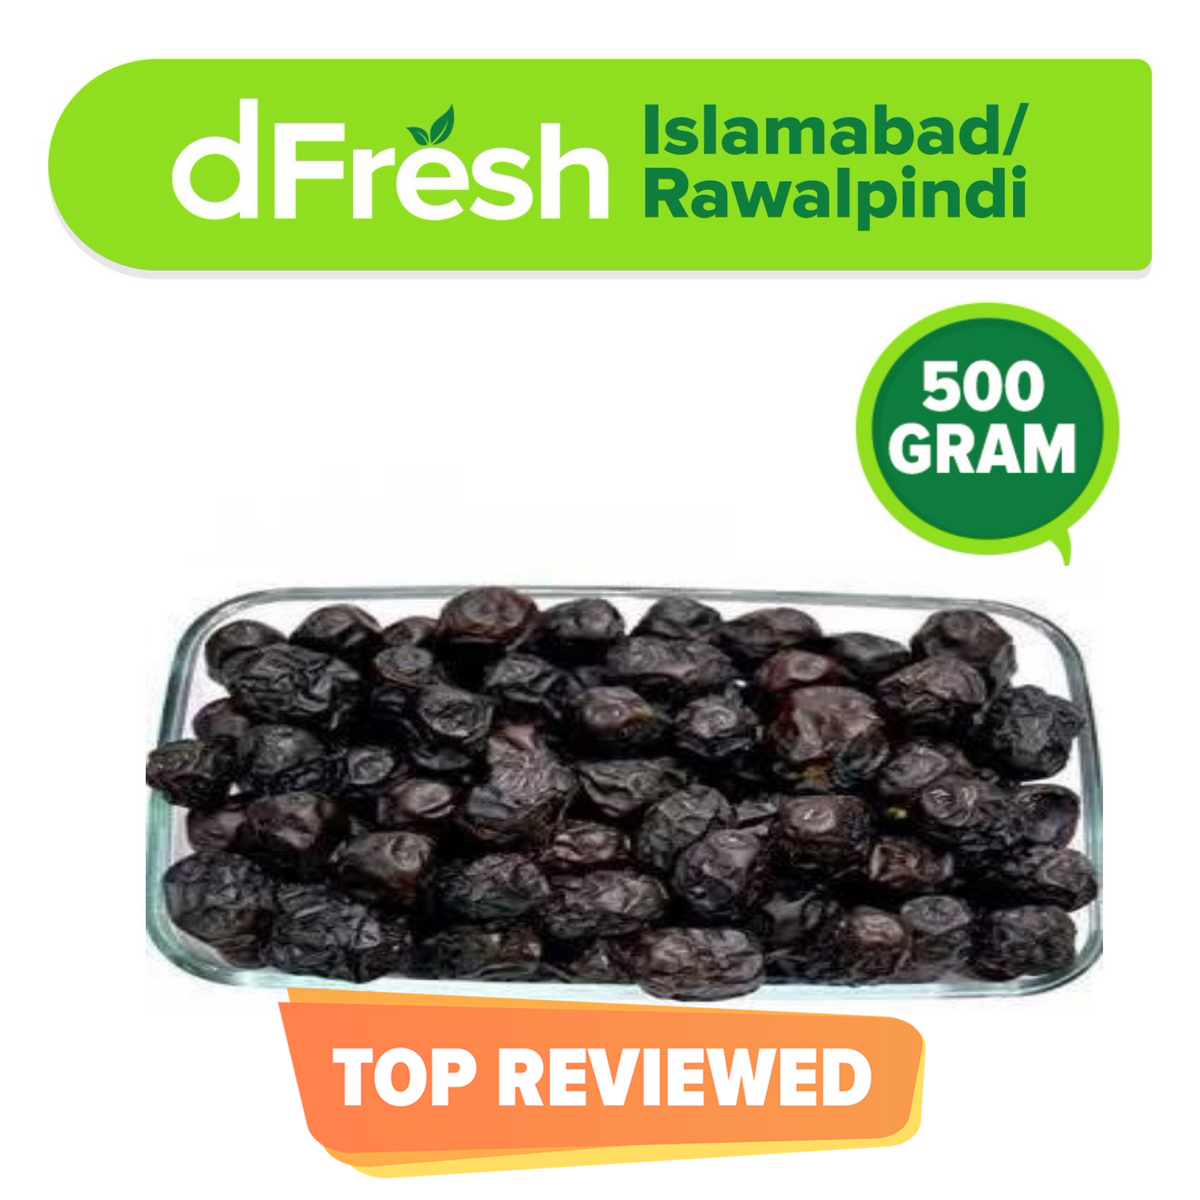 Dfresh: Premium Maazwati Dates (0.5 Kg)